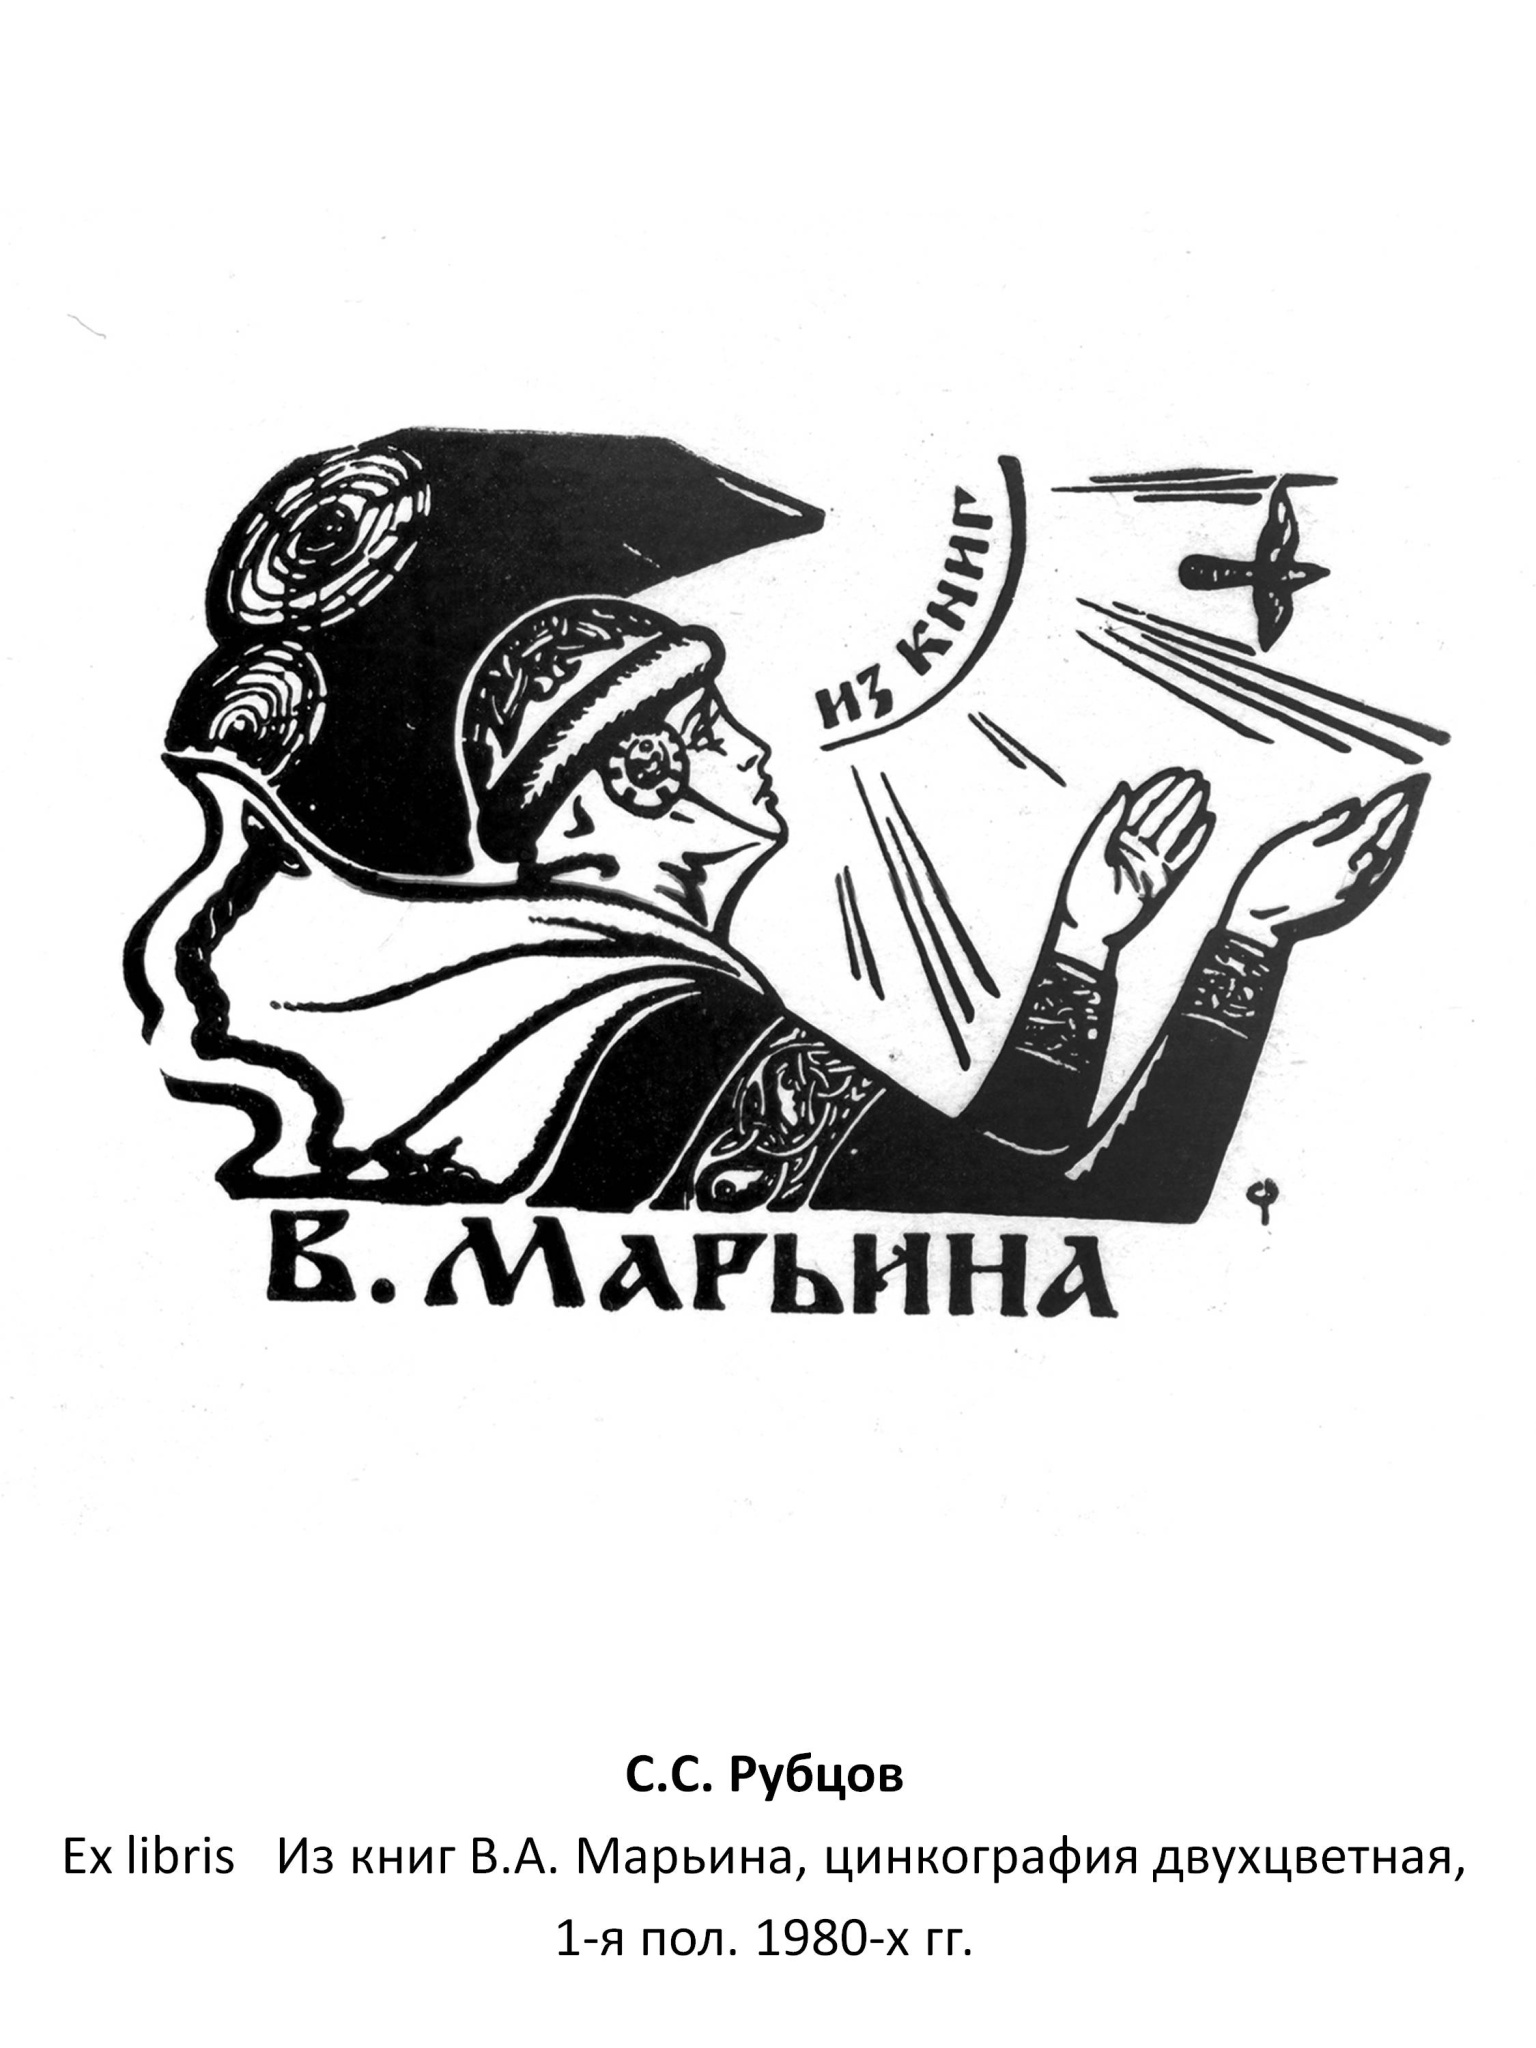 С. С. Рубцов Ex libris Из книг В. А. Марьина, цинкография двухцвеная, 1-я пол. 1980-х гг